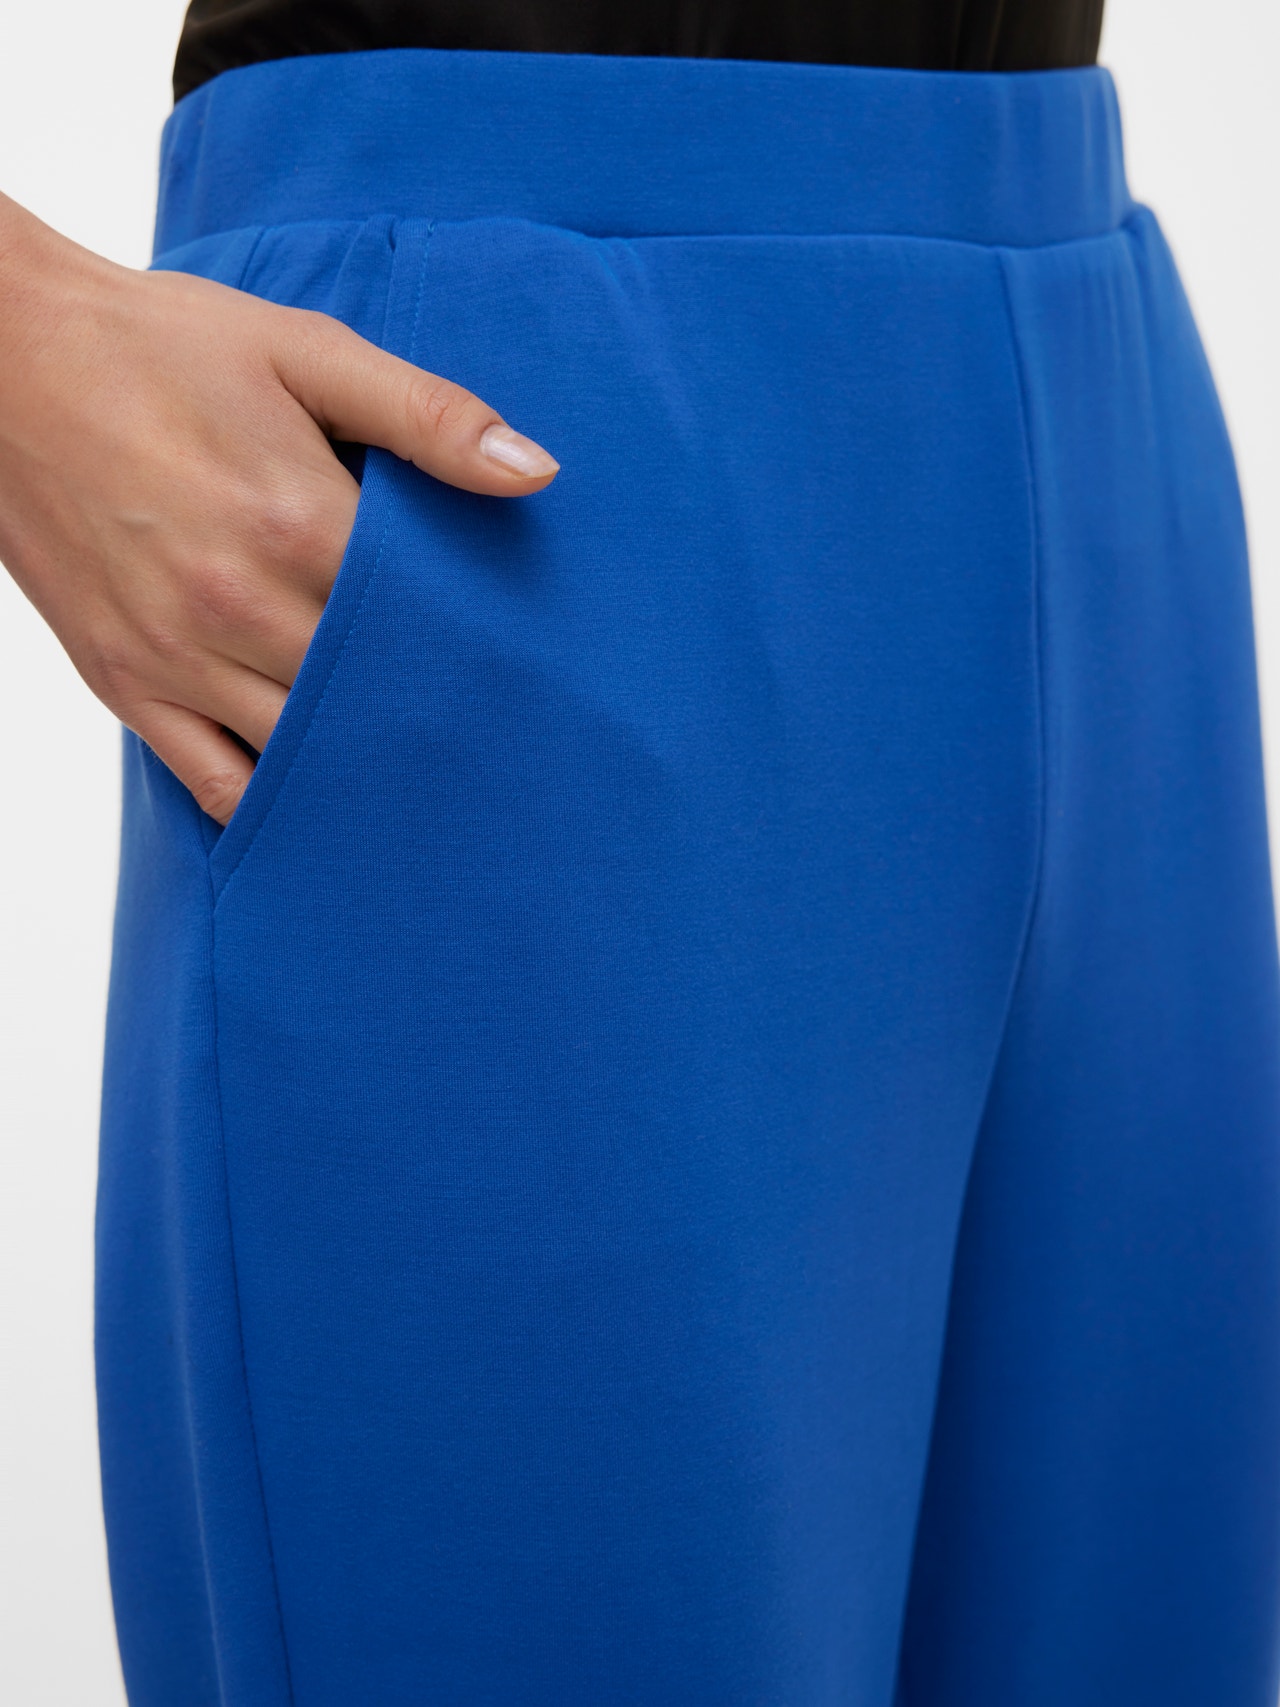 Vero Moda VMSILKY Pantalons -Beaucoup Blue - 10302891